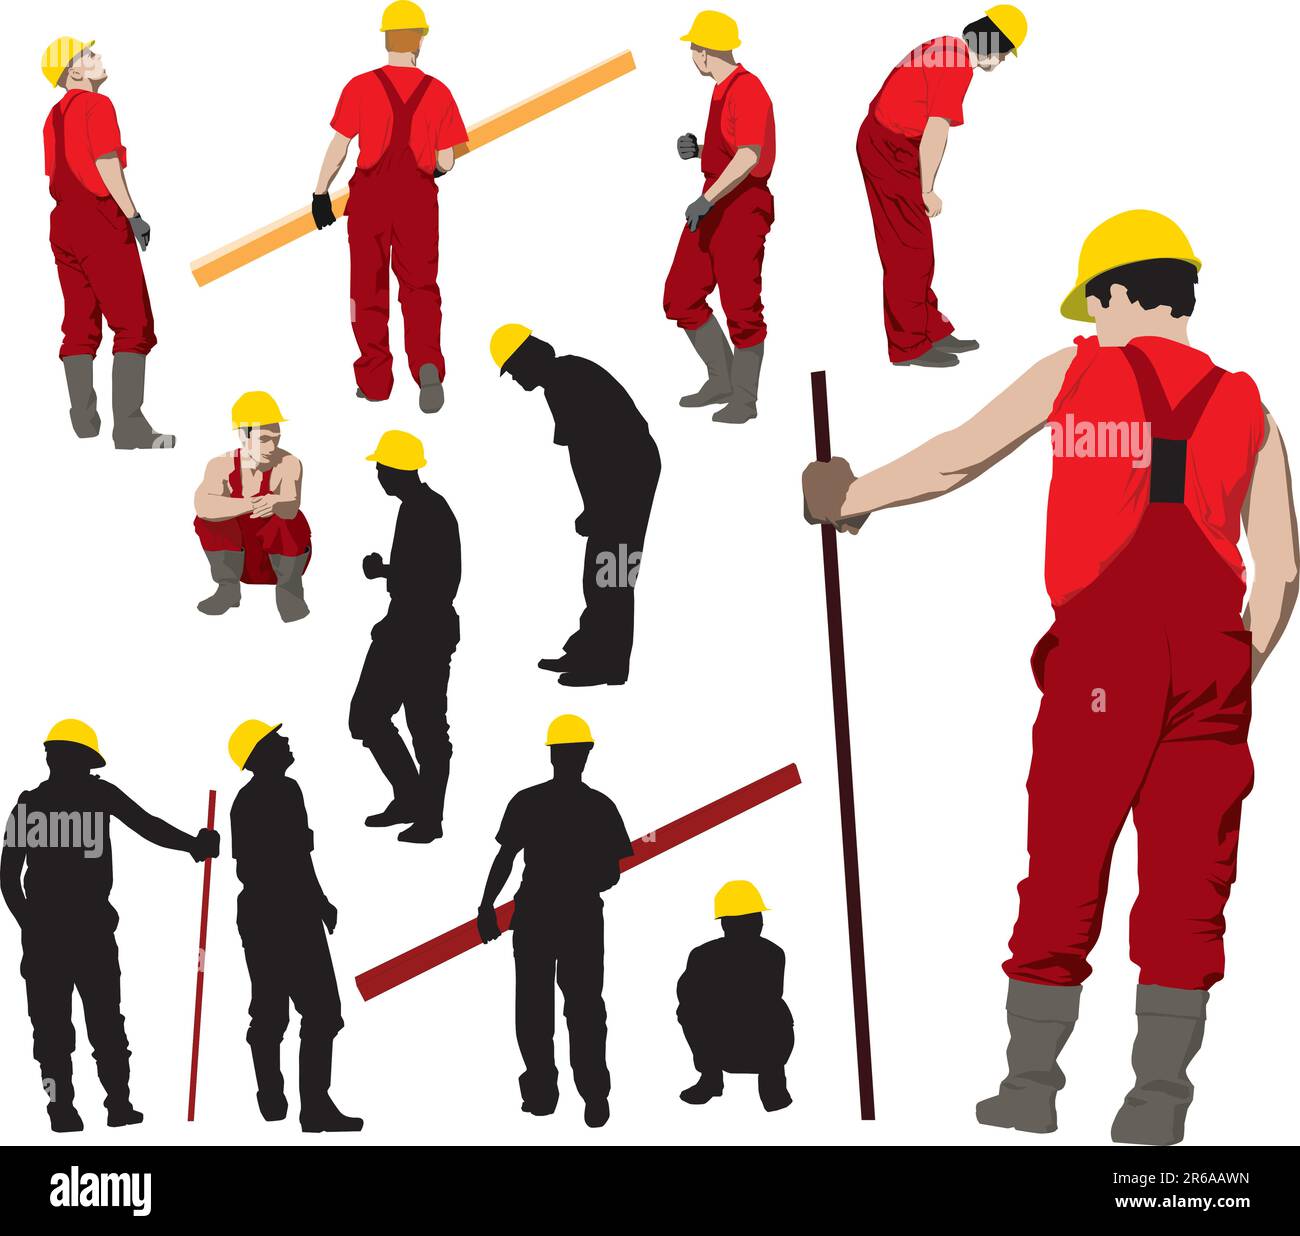 Team von Bauarbeitern in der roten Arbeitskleidung eine gelbe Helme. Vektor-Illustration und Silhouetten Stock Vektor